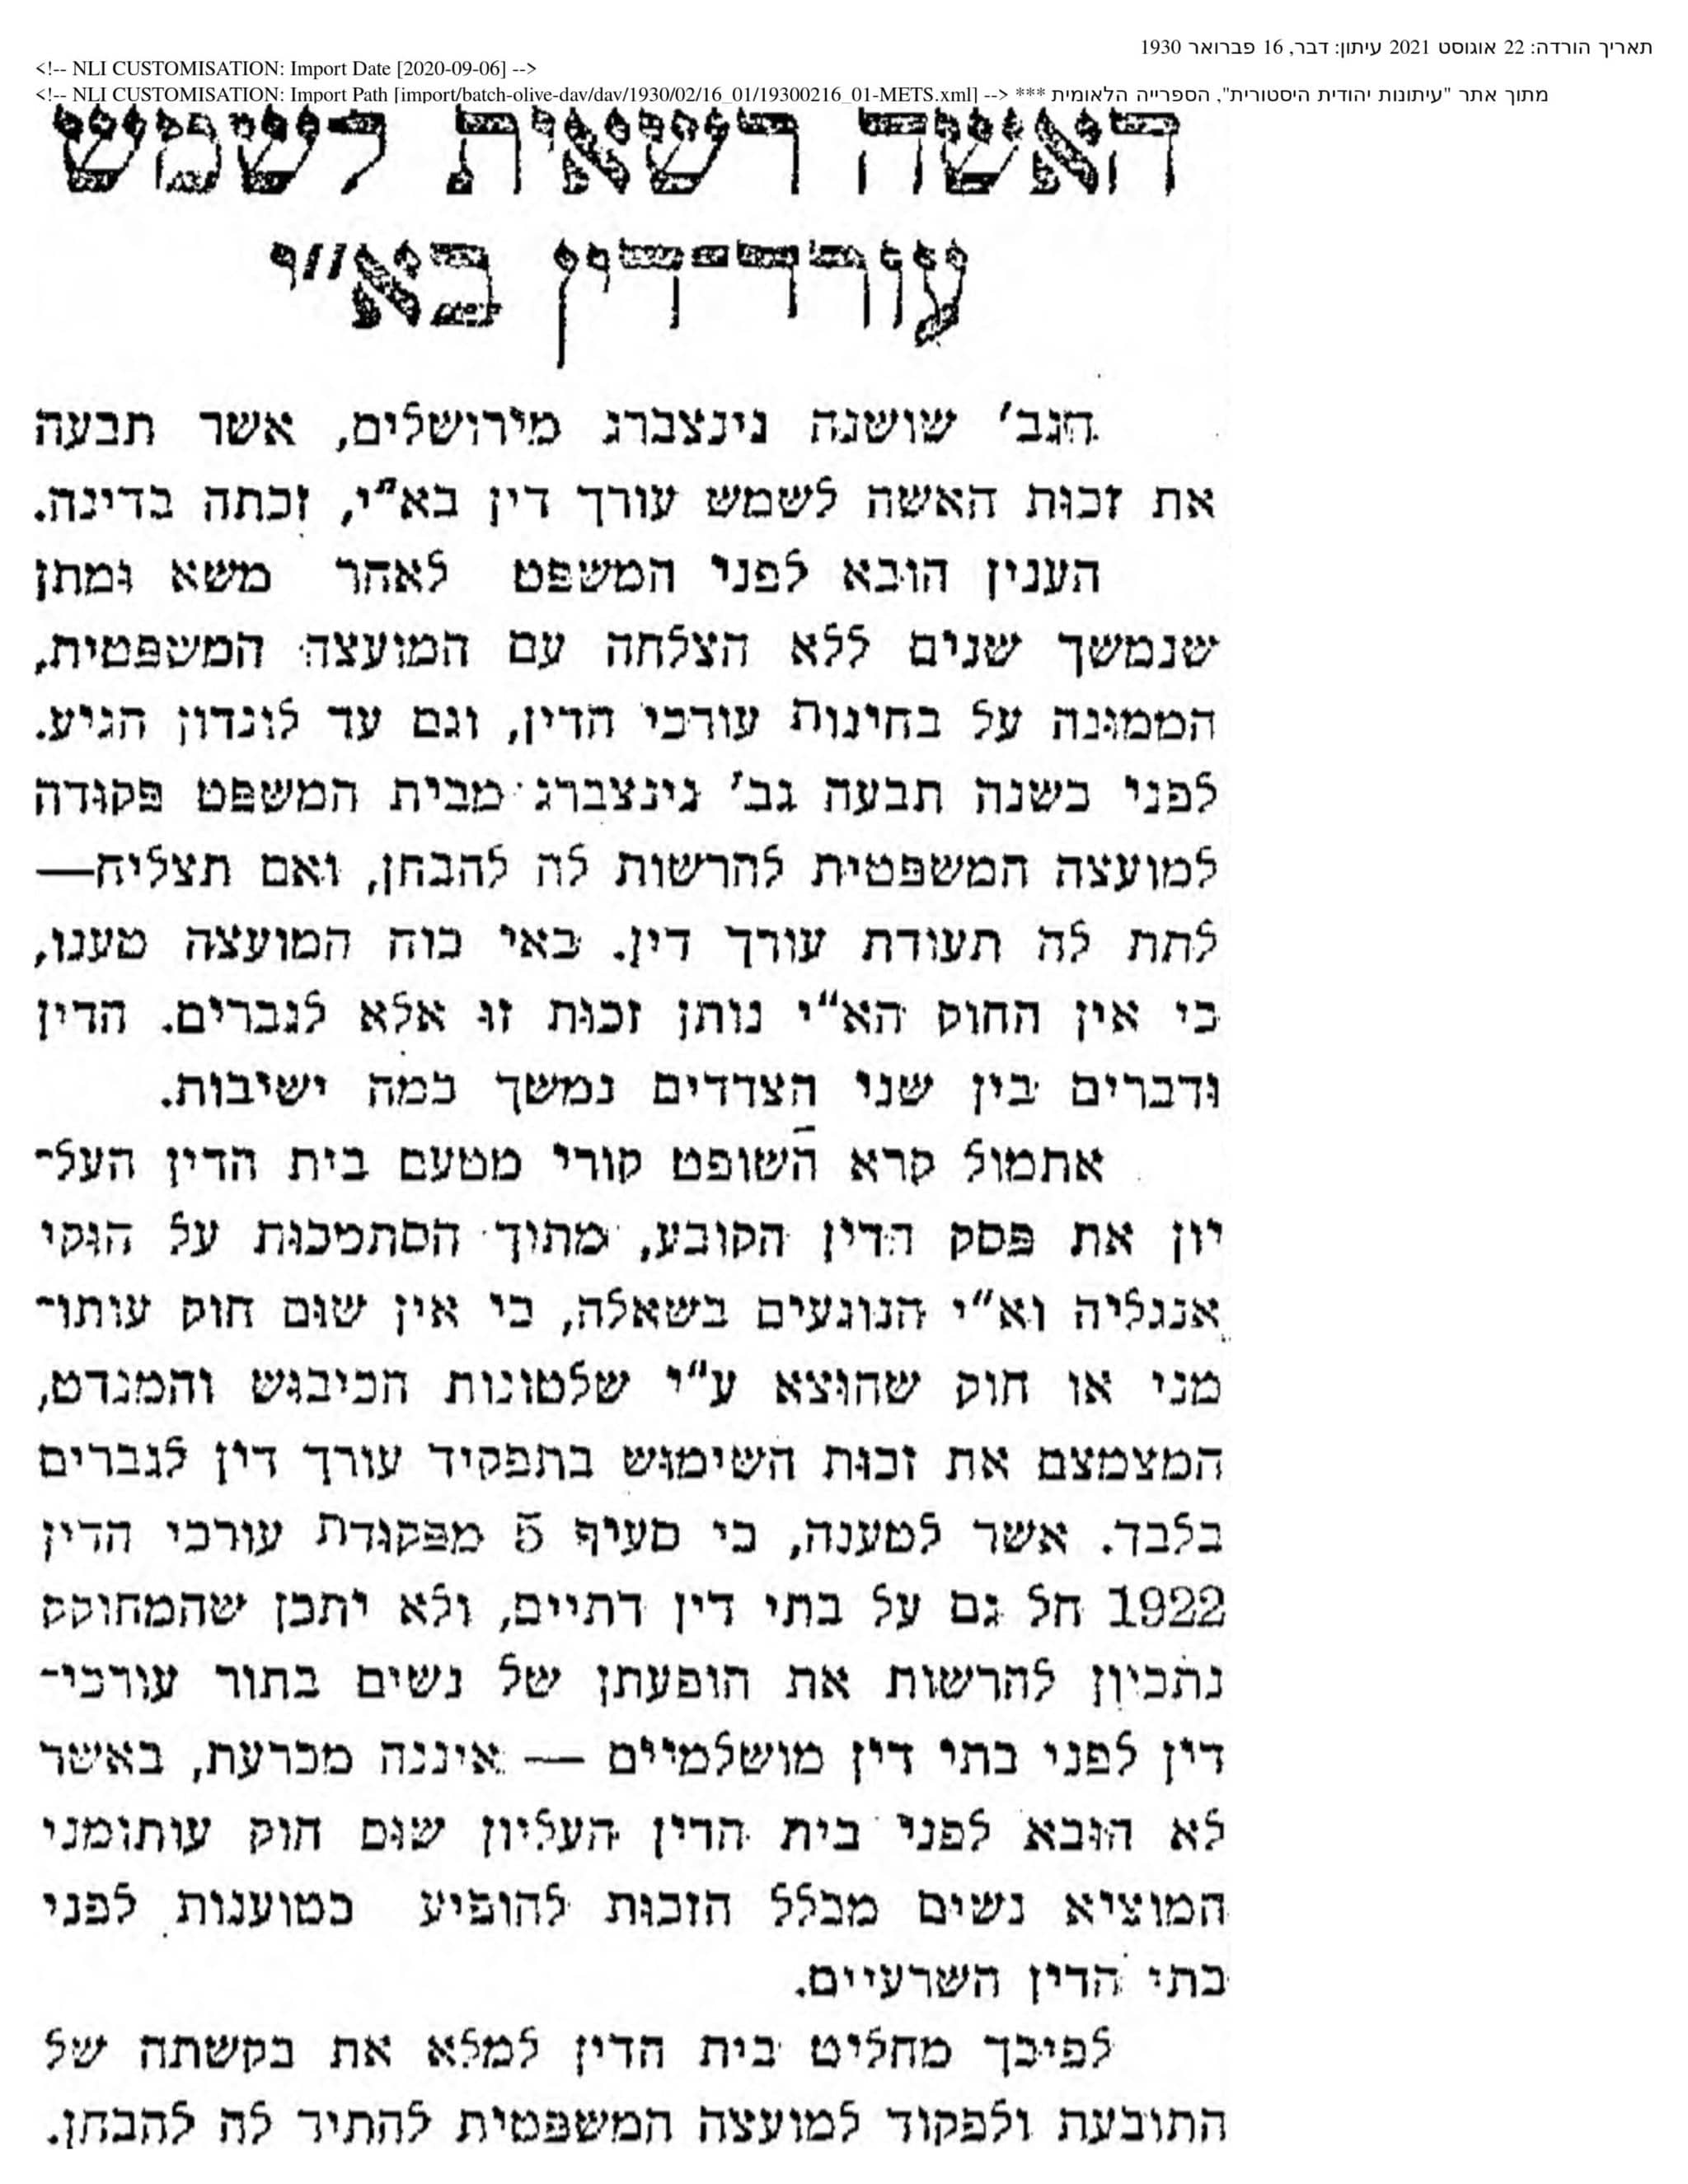 כתבה בעיתון דבר 16.2.30 (באדיבות מכון לבון, מתוך אתר "עיתונות יהודית היסטורית" הספריה הלאומית)